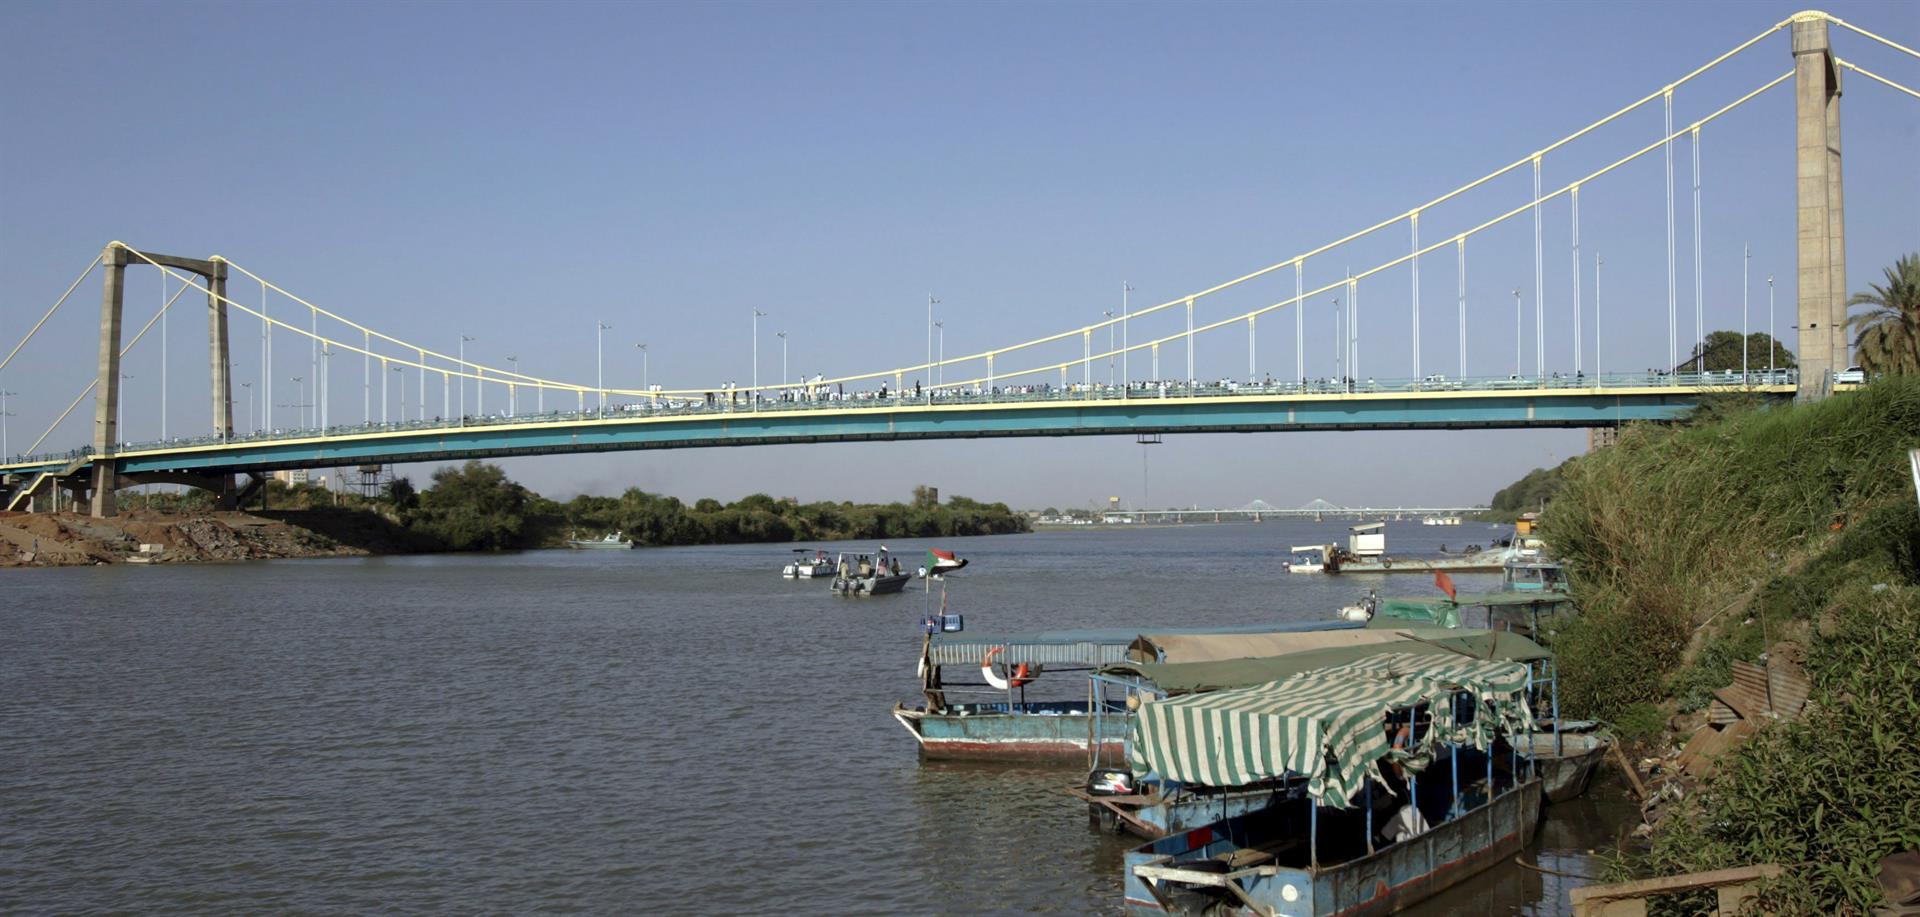 Foto de archivo del puente que une el centro de Jartum con la isla Tuti. EFE/PHILIP DHIL